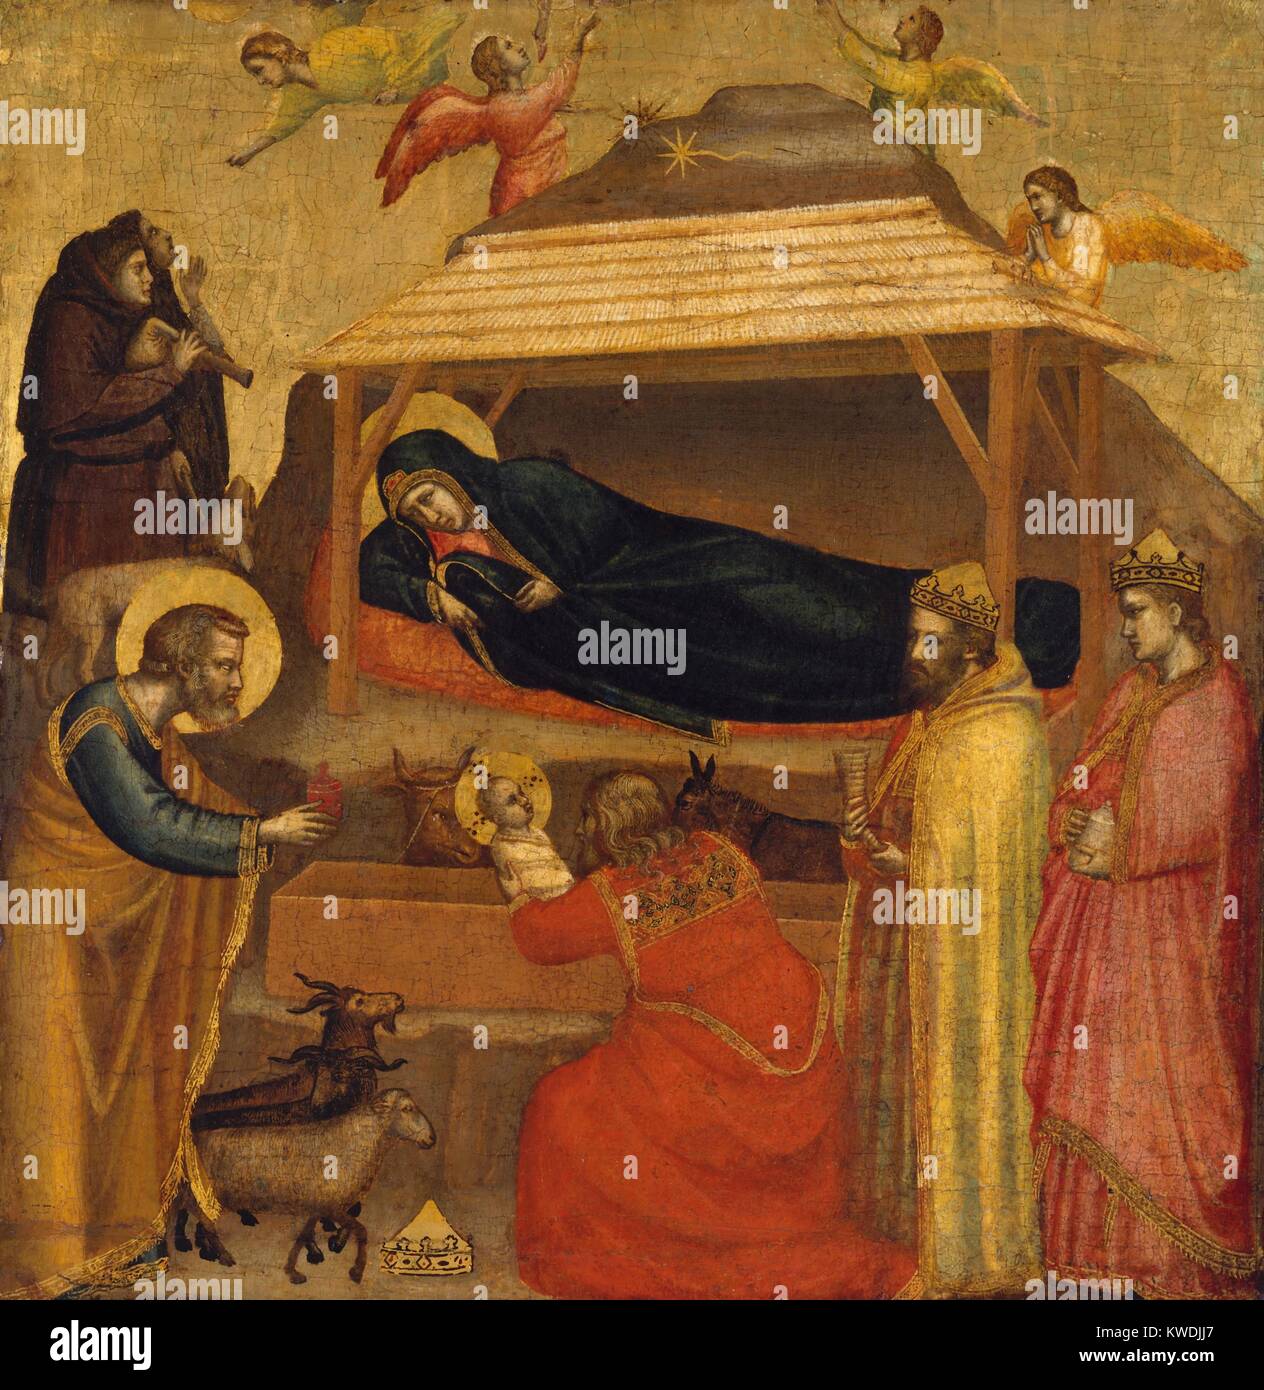 Die Anbetung der Könige, von Giotto, 1320, Italienische Proto-Renaissance Malerei, Tempera auf Holz. Nach der Geburt von Jesus, die Bibel in Matthäus 2:11, drei Könige eine Wallfahrt zu Jesus, indem Sie einem Stern, bringen ihn Geschenke Gold, Weihrauch und Myrrhe, und ihn anbeten. Giottos hinzugefügt, um die Aktion eines Heiligen drei Könige Jesus halten, eine menschliche Moment in Uebereinstimmung mit seinem mit einem größeren Realismus (BSLOC 2017 16 46) Stockfoto